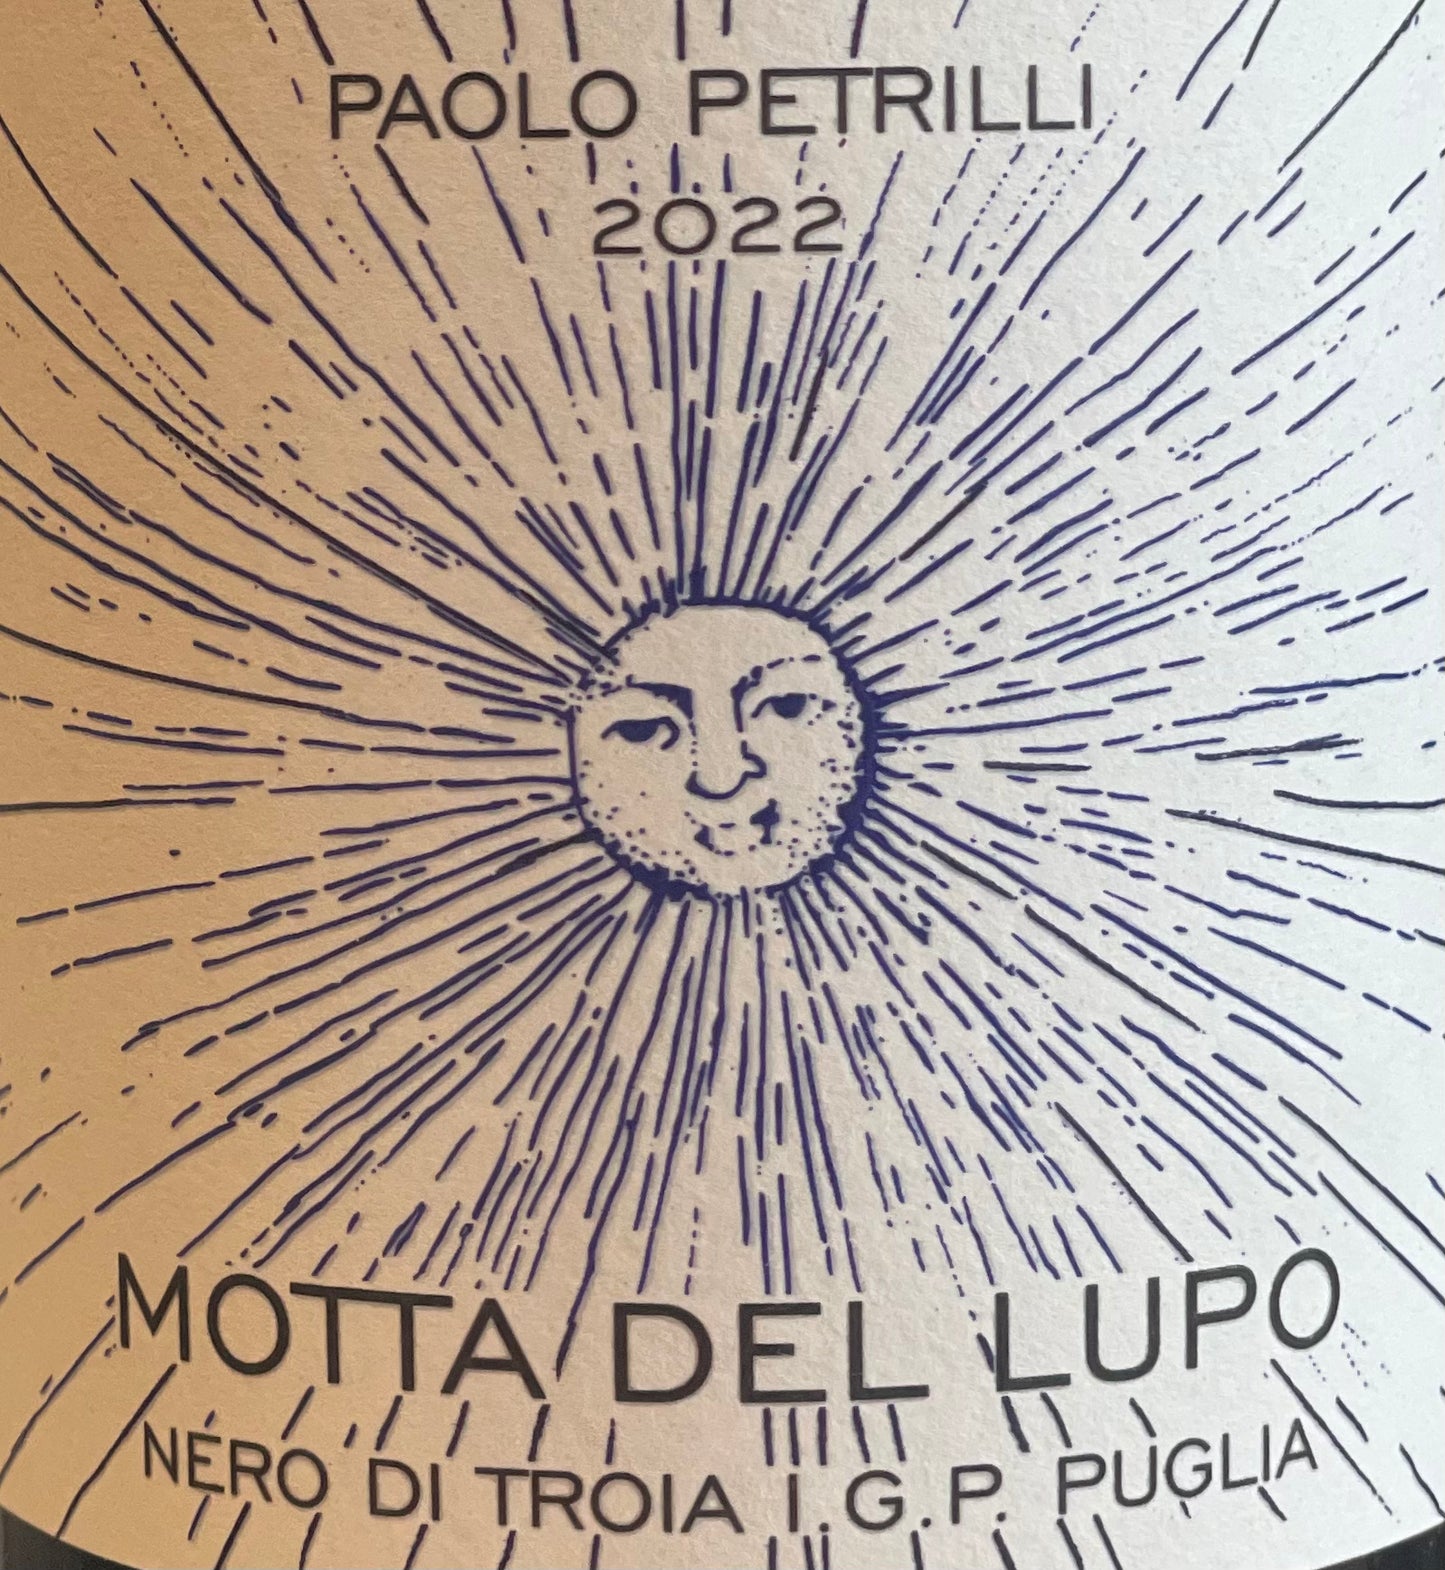 Paolo Petrilli 'Motta Del Lupo' - Nero di Troia